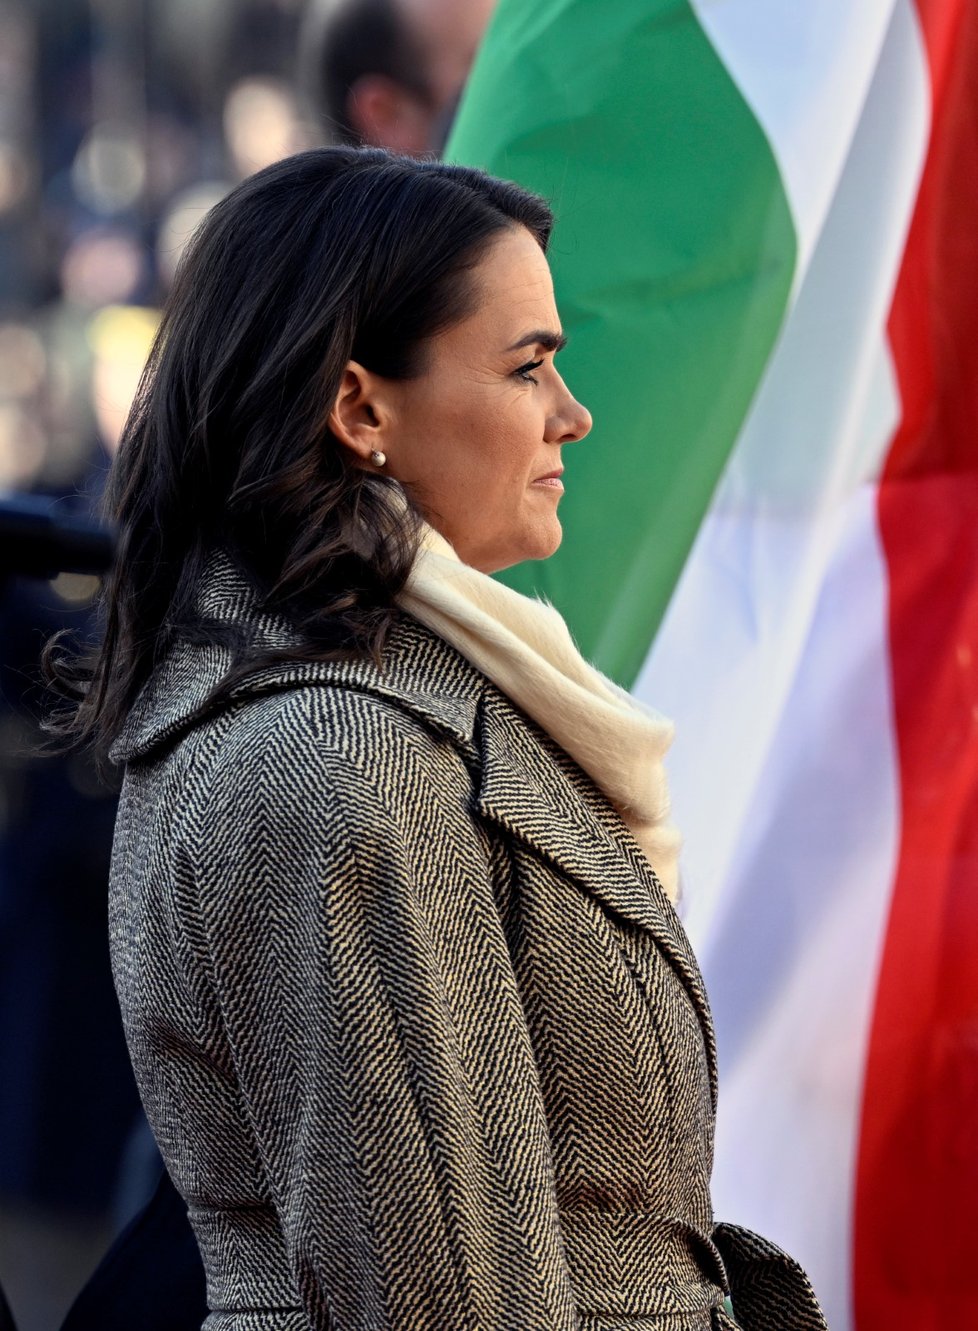 Maďarská prezidentka Katalin Nováková v Praze (7.6.2022)